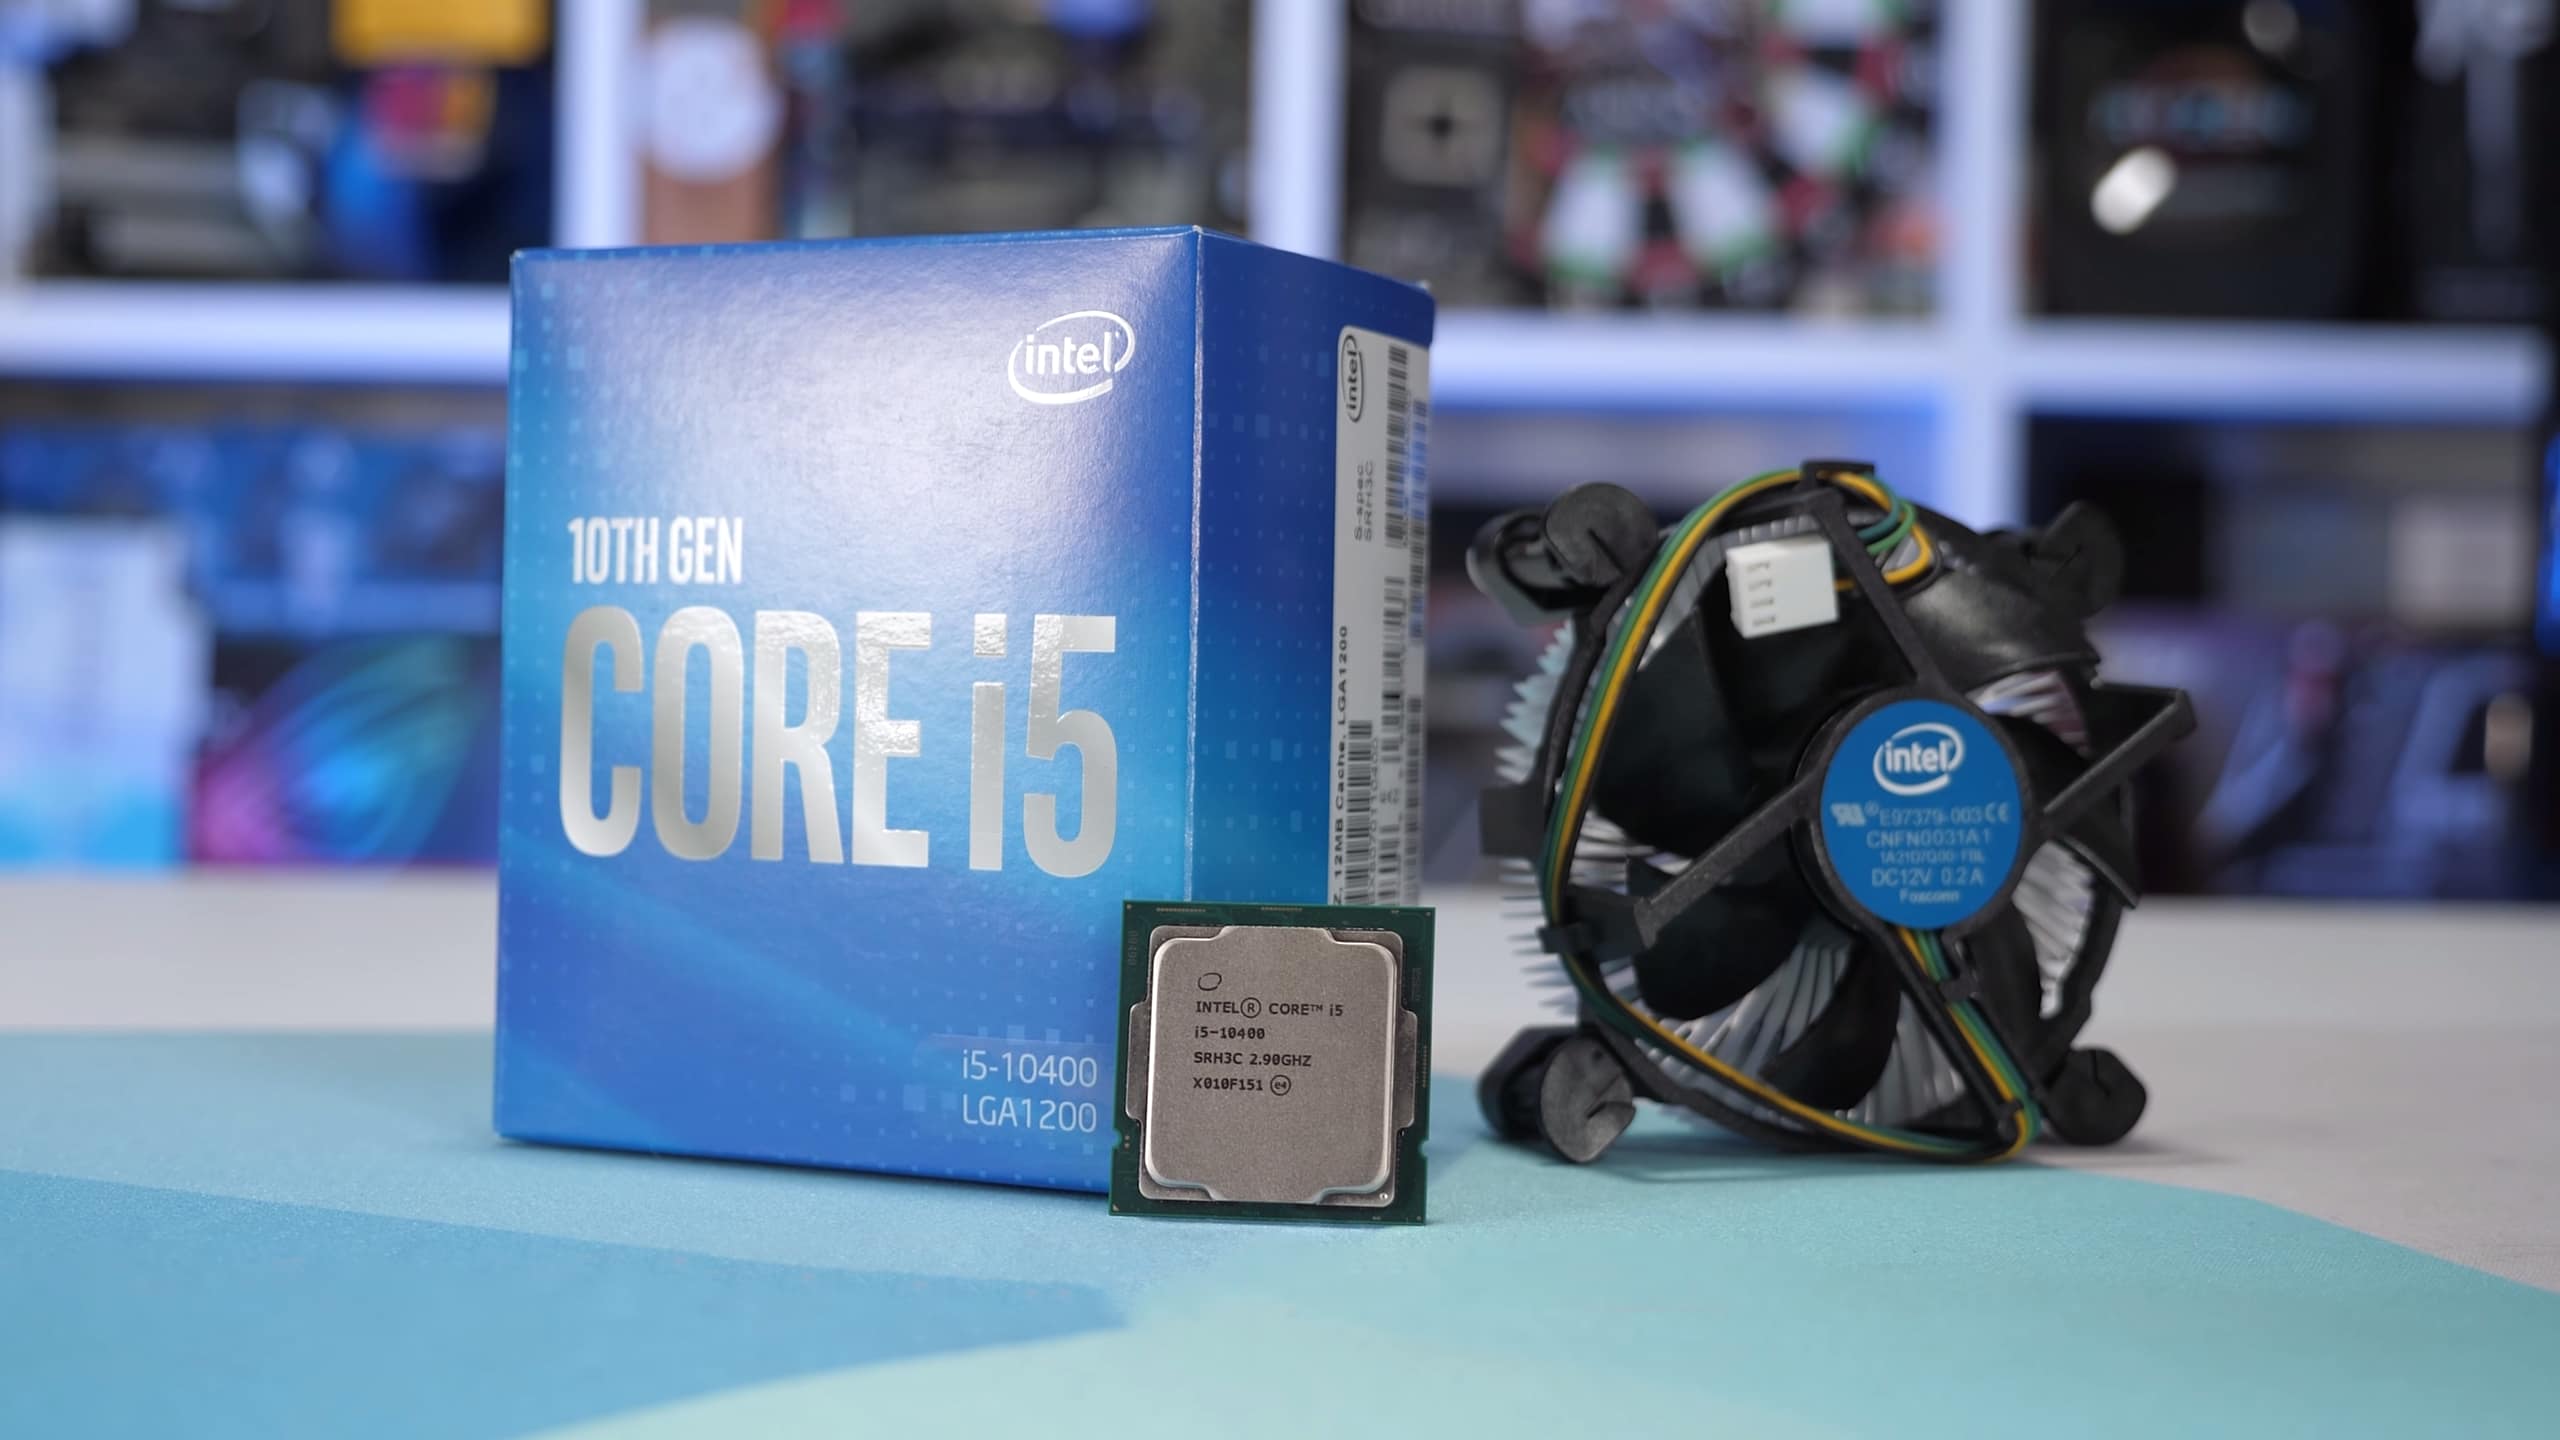 V balení procesoru Intel Core i5-10400 pak naleznete vylepšený chladič typu Box, který zajistí bezpečný provoz díky vysoké úrovni absorbce tepla z CPU.